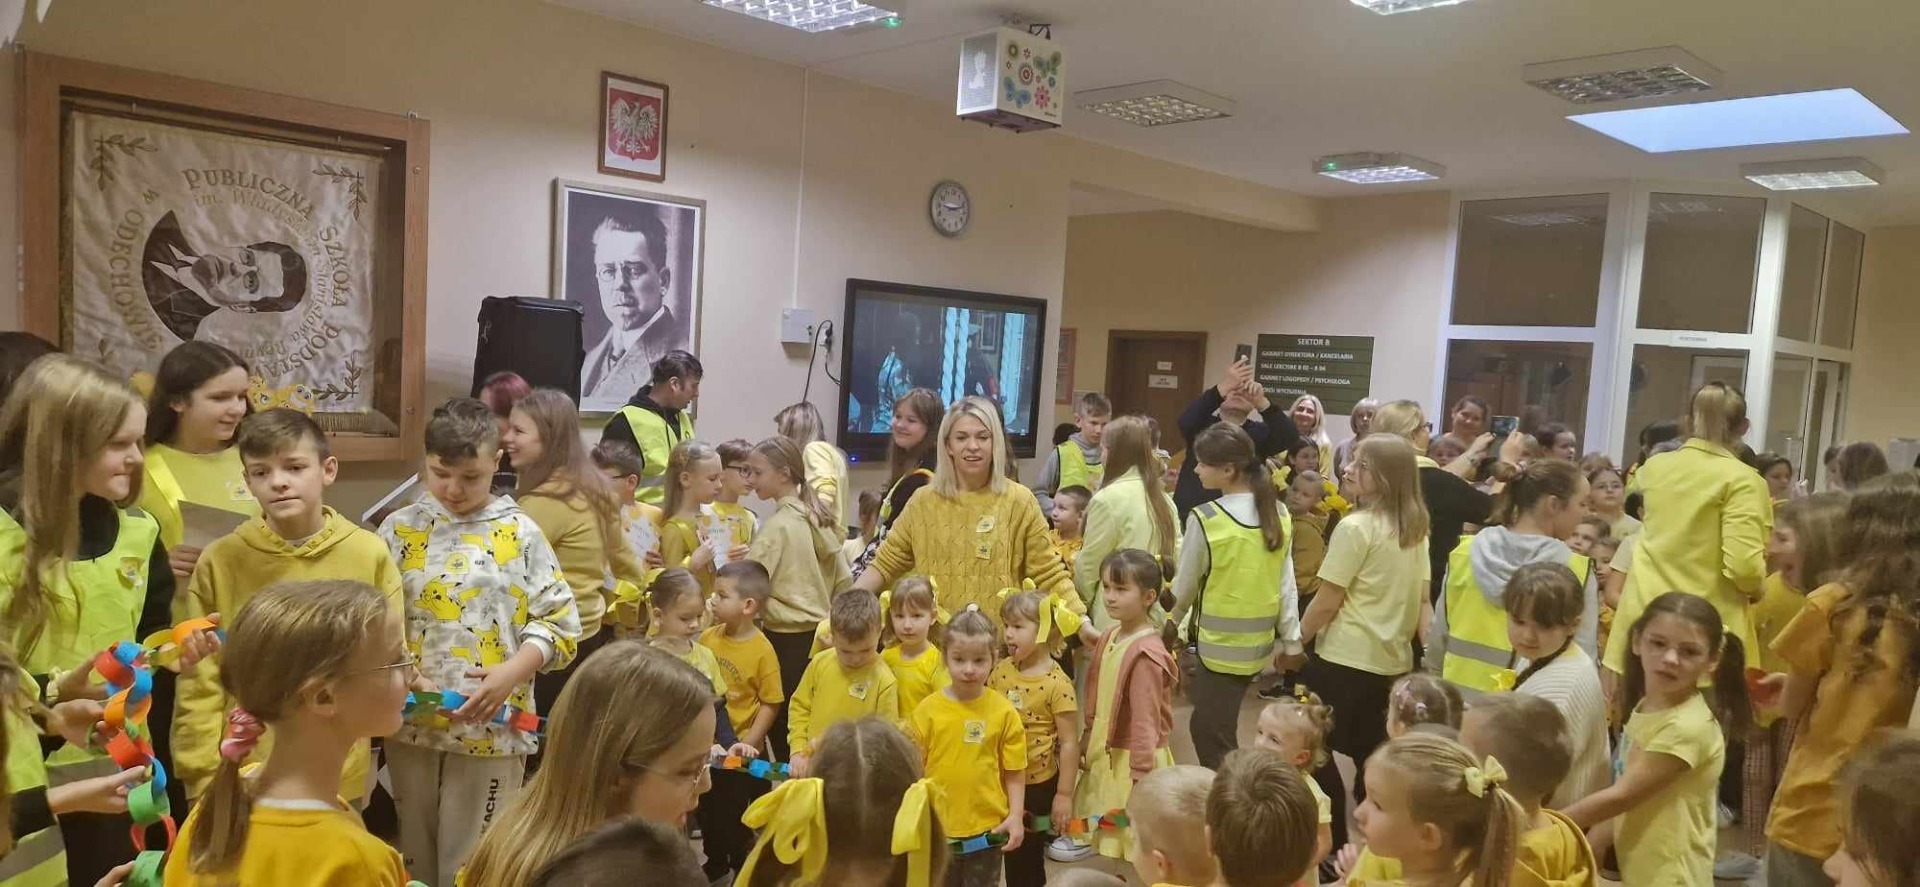 Na zdjęciu widoczna jest cała społeczność szkolna podczas obchodów Dnia Życzliwości.